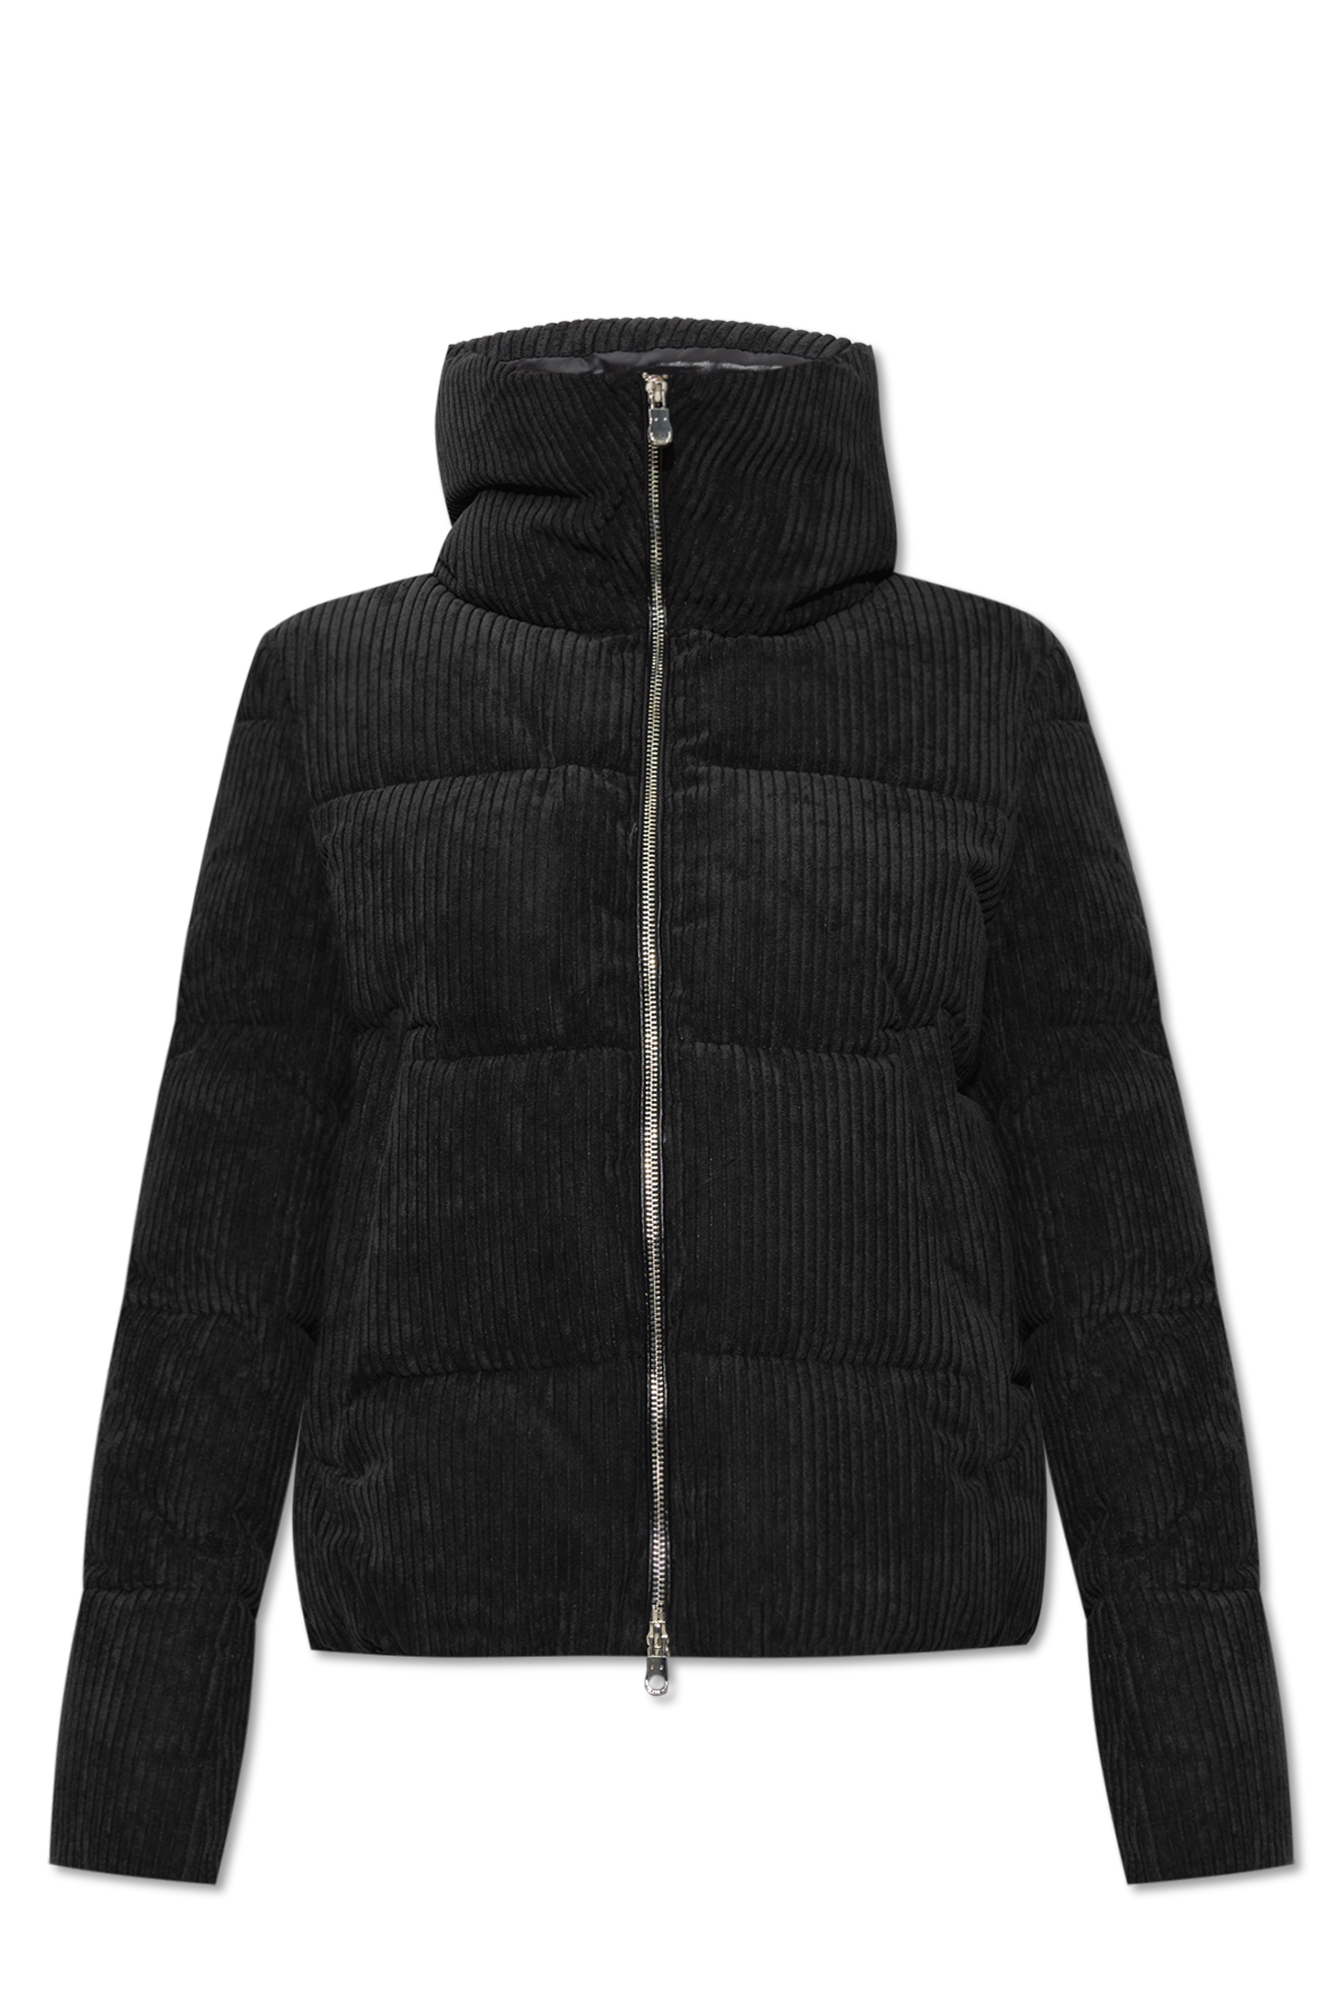 shortsleeved denim shirt ‘Vely’ insulated shirt jacket